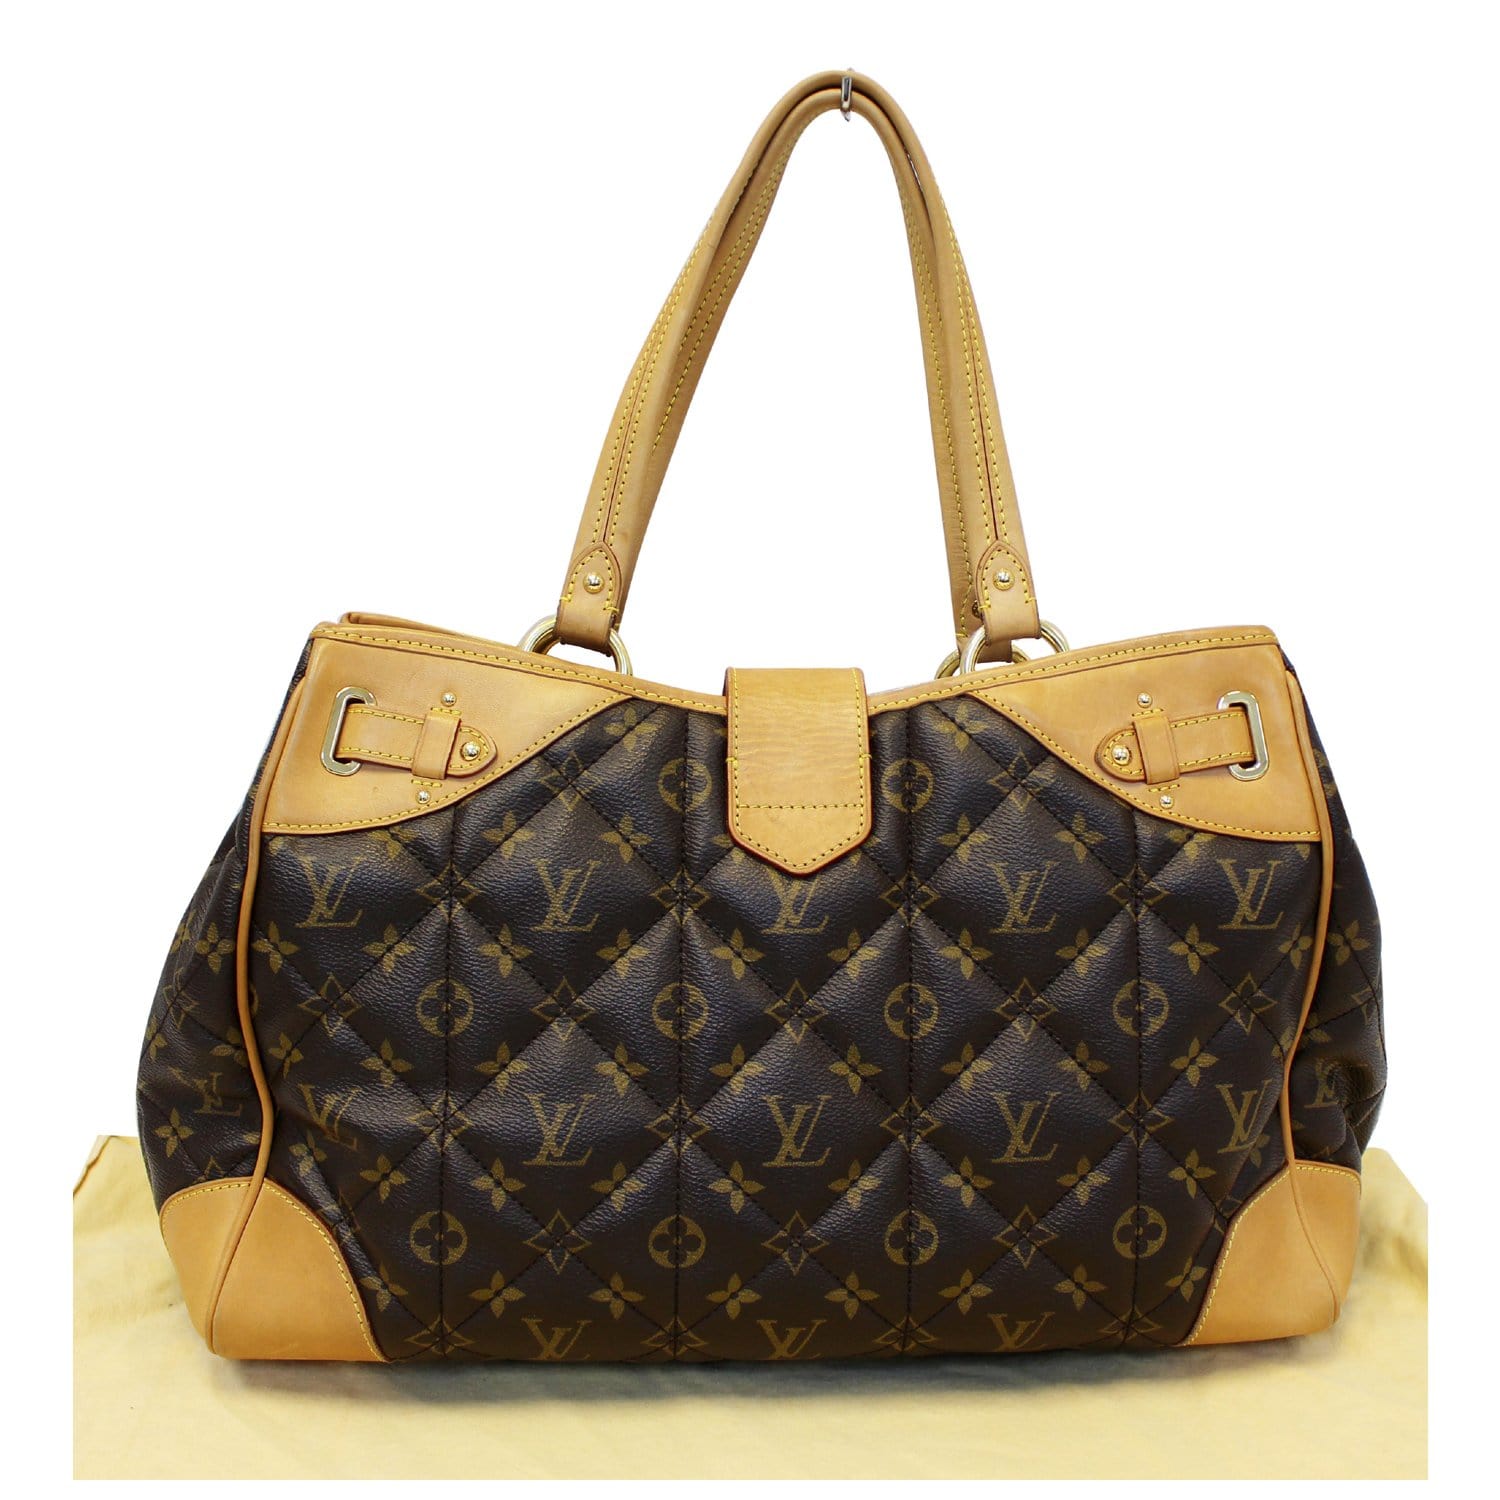 Louis Vuitton Monogram Canvas Etoile Shopper Bag